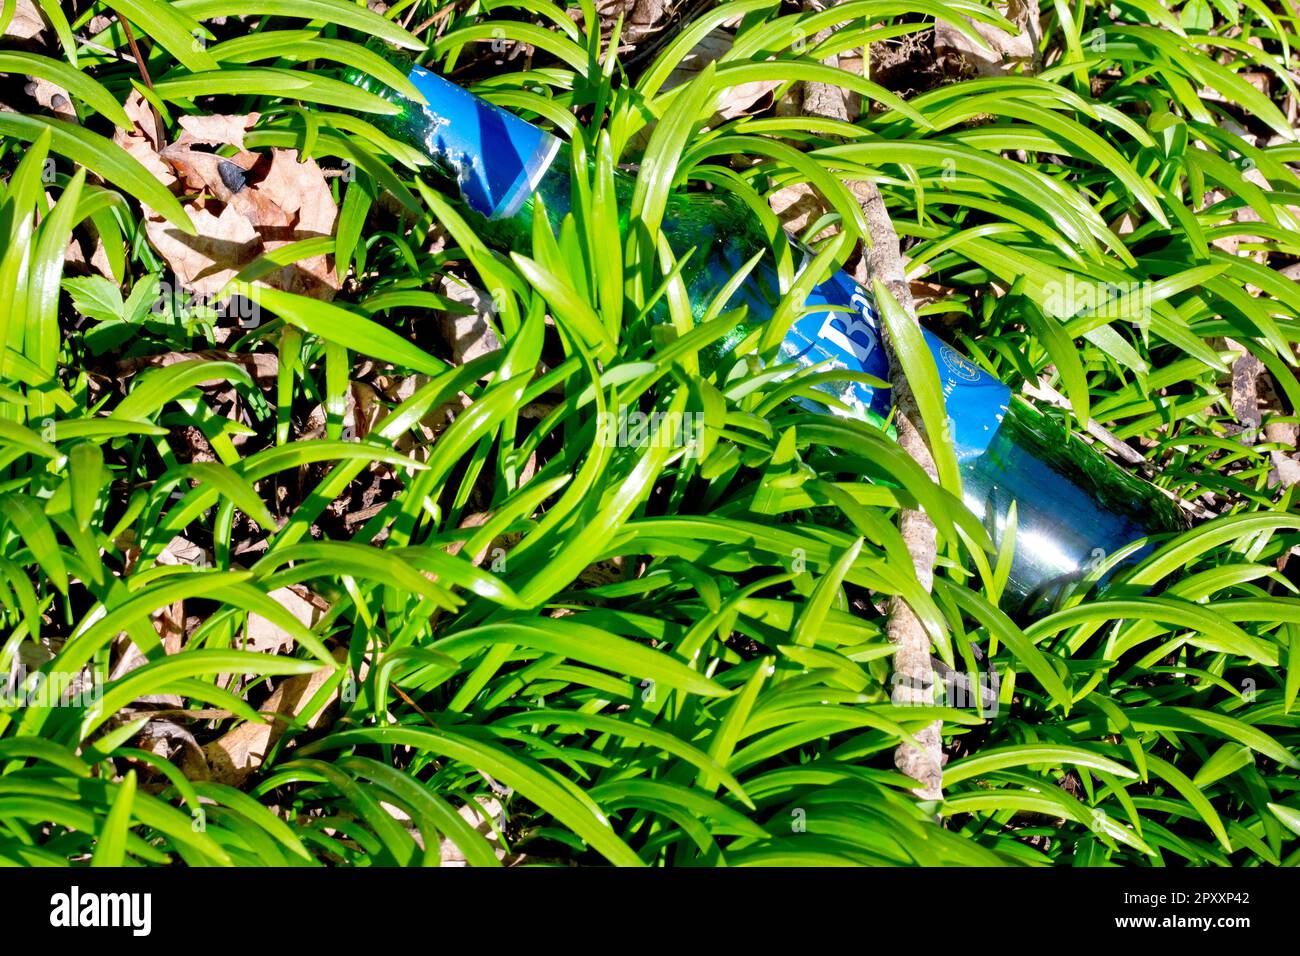 Gros plan d'une bouteille de bière verte vide, soigneusement jetée et maintenant cachée et cachée par les pousses vertes du printemps. Banque D'Images